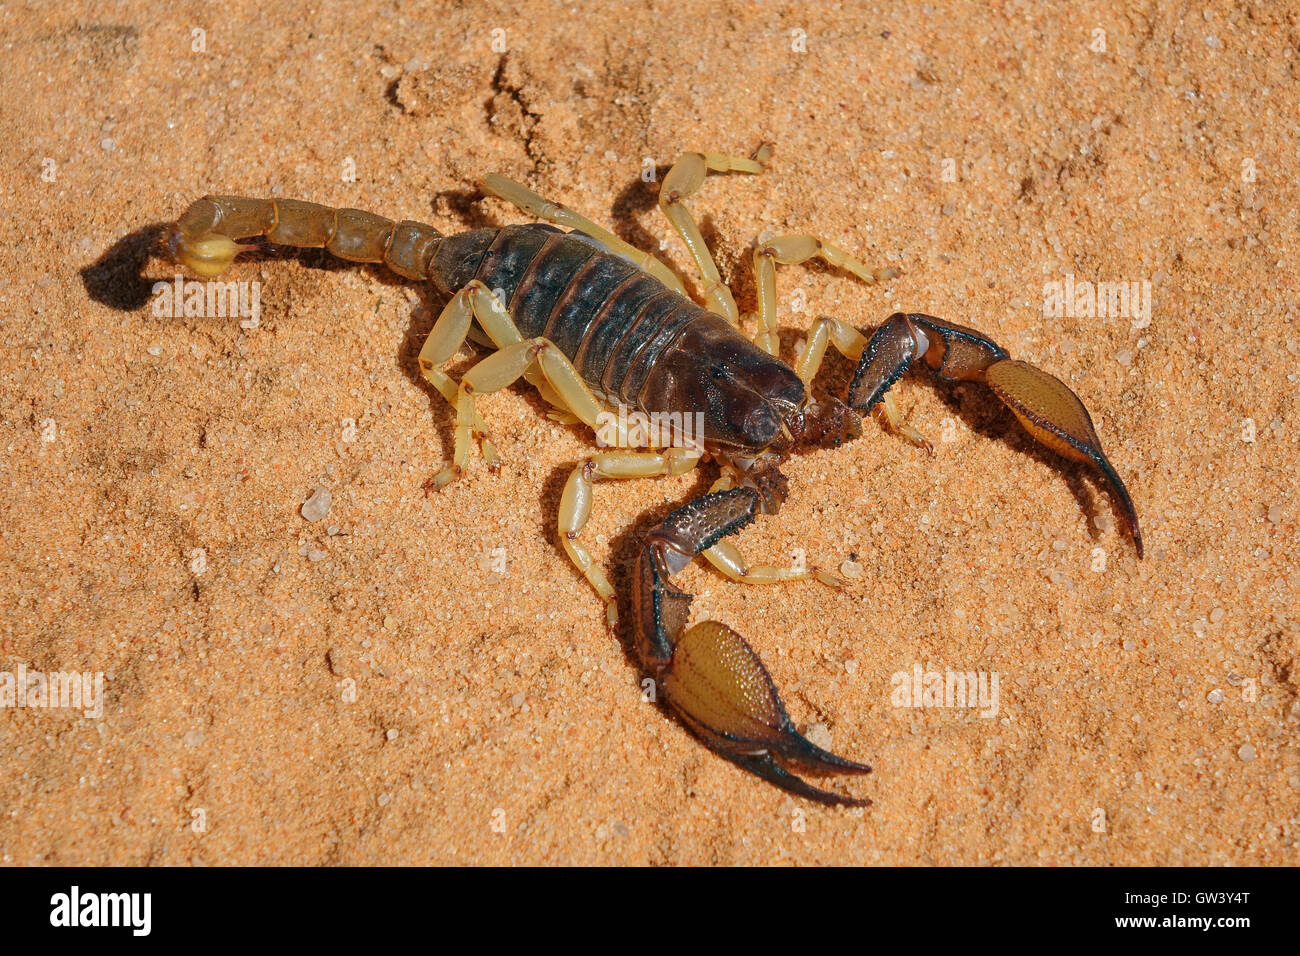 Un scorpion venimeux (Parabuthus spp.), désert du Kalahari, Afrique du Sud Banque D'Images